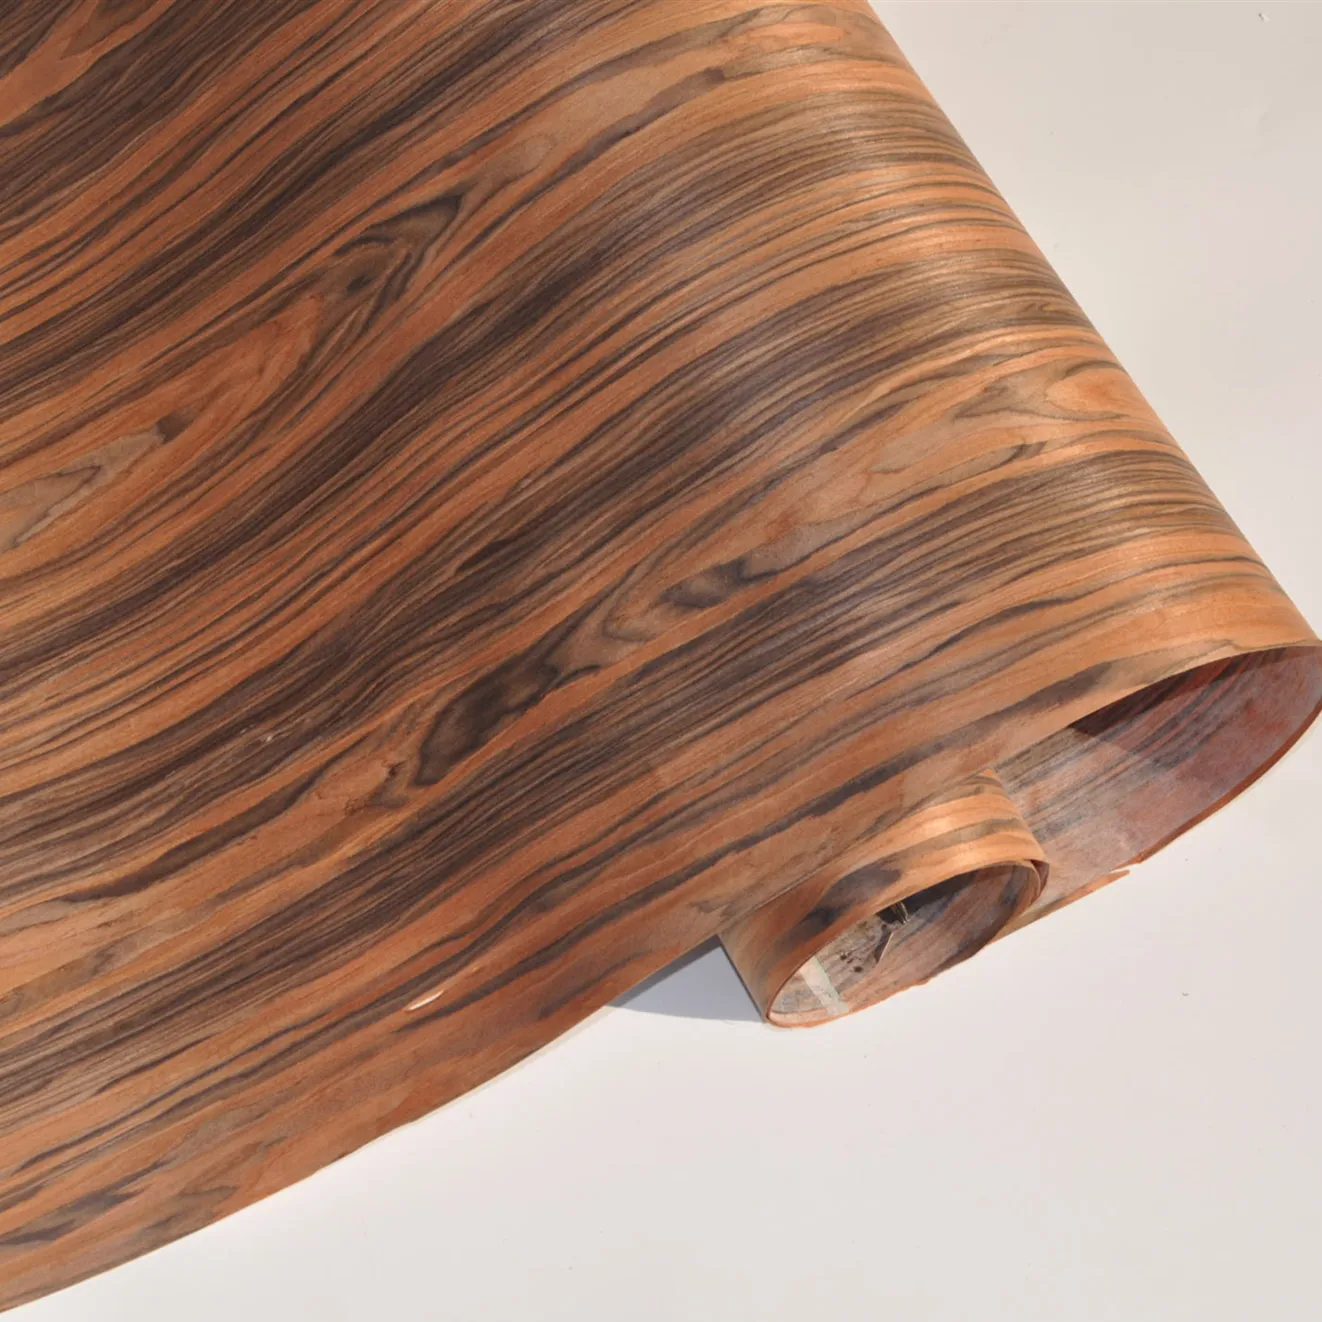 גרינלנד חדש עיצוב מהונדס עץ חזיתות גודל 250*58CM באיכות גבוהה Rosewood לבית ריהוט דלת שולחן עור קישוט